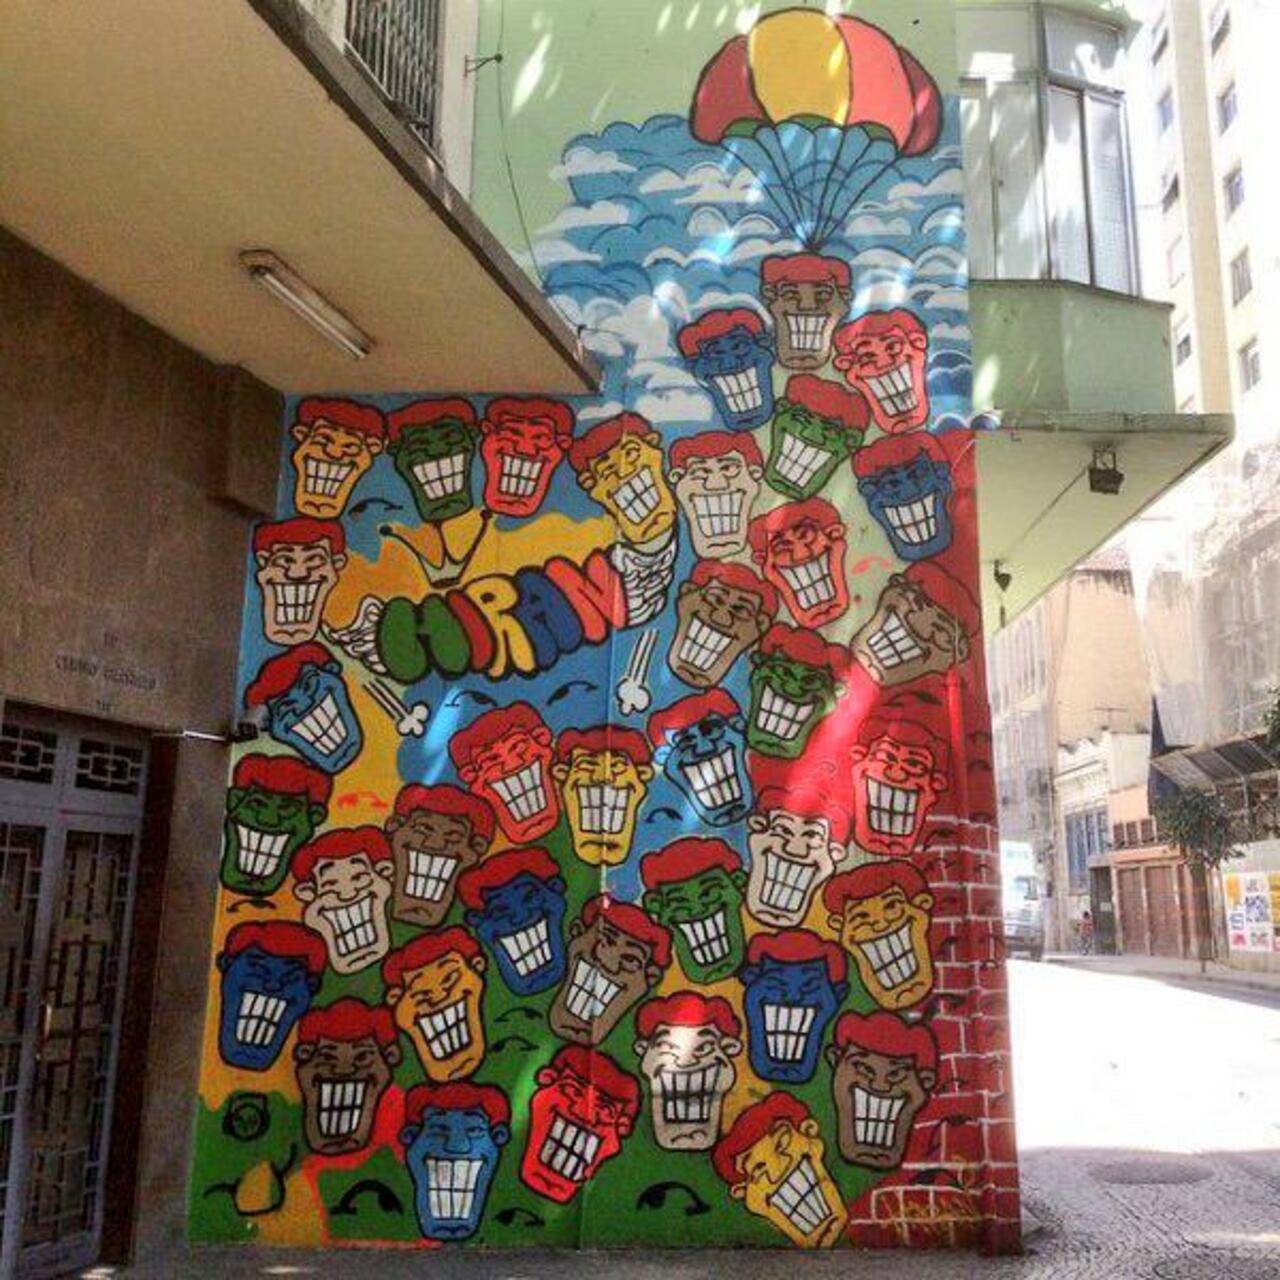 RT @elkland3stilo: Hiran
Rio de Janeiro, Brazil
#streetart #art #graffiti #mural http://t.co/wKcy9U4dt2